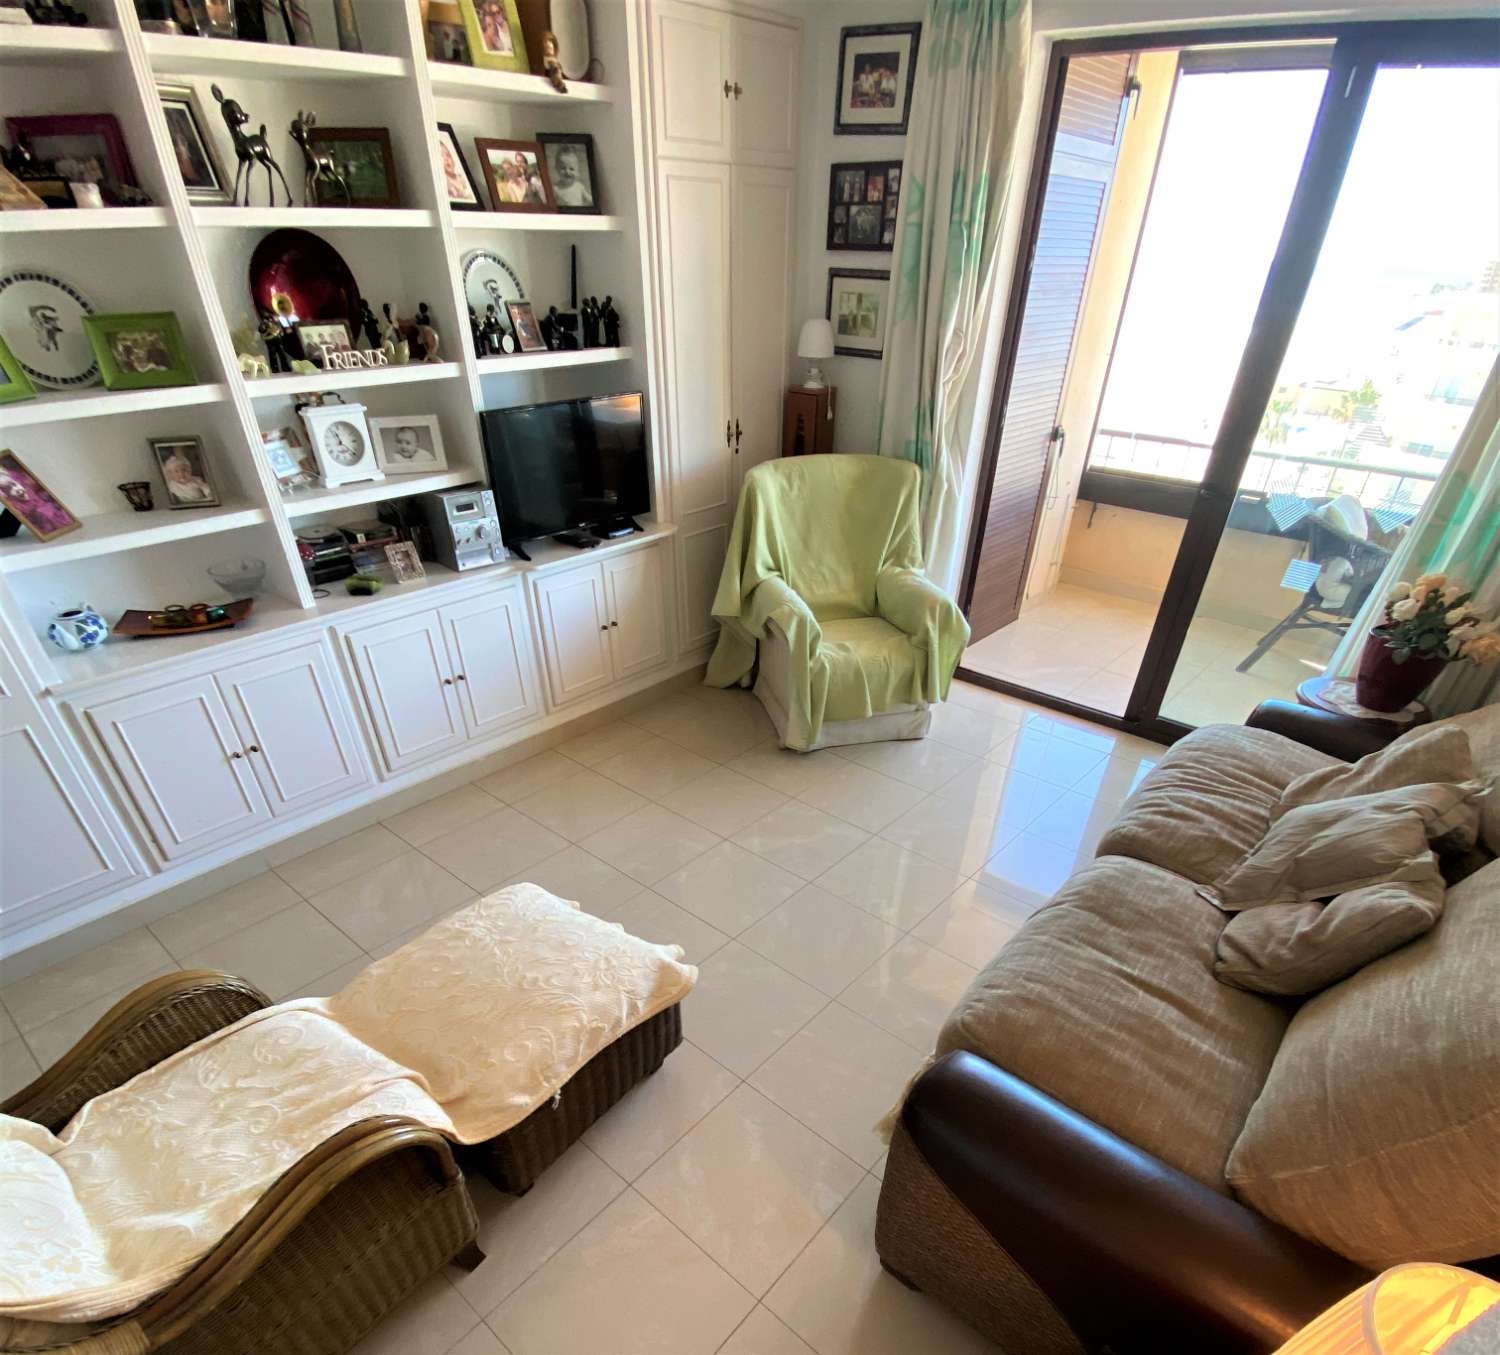 Fuengirola, 1 slaapkamer, panoramisch uitzicht, gratis wifi, zwembad, eerstelijns strand.